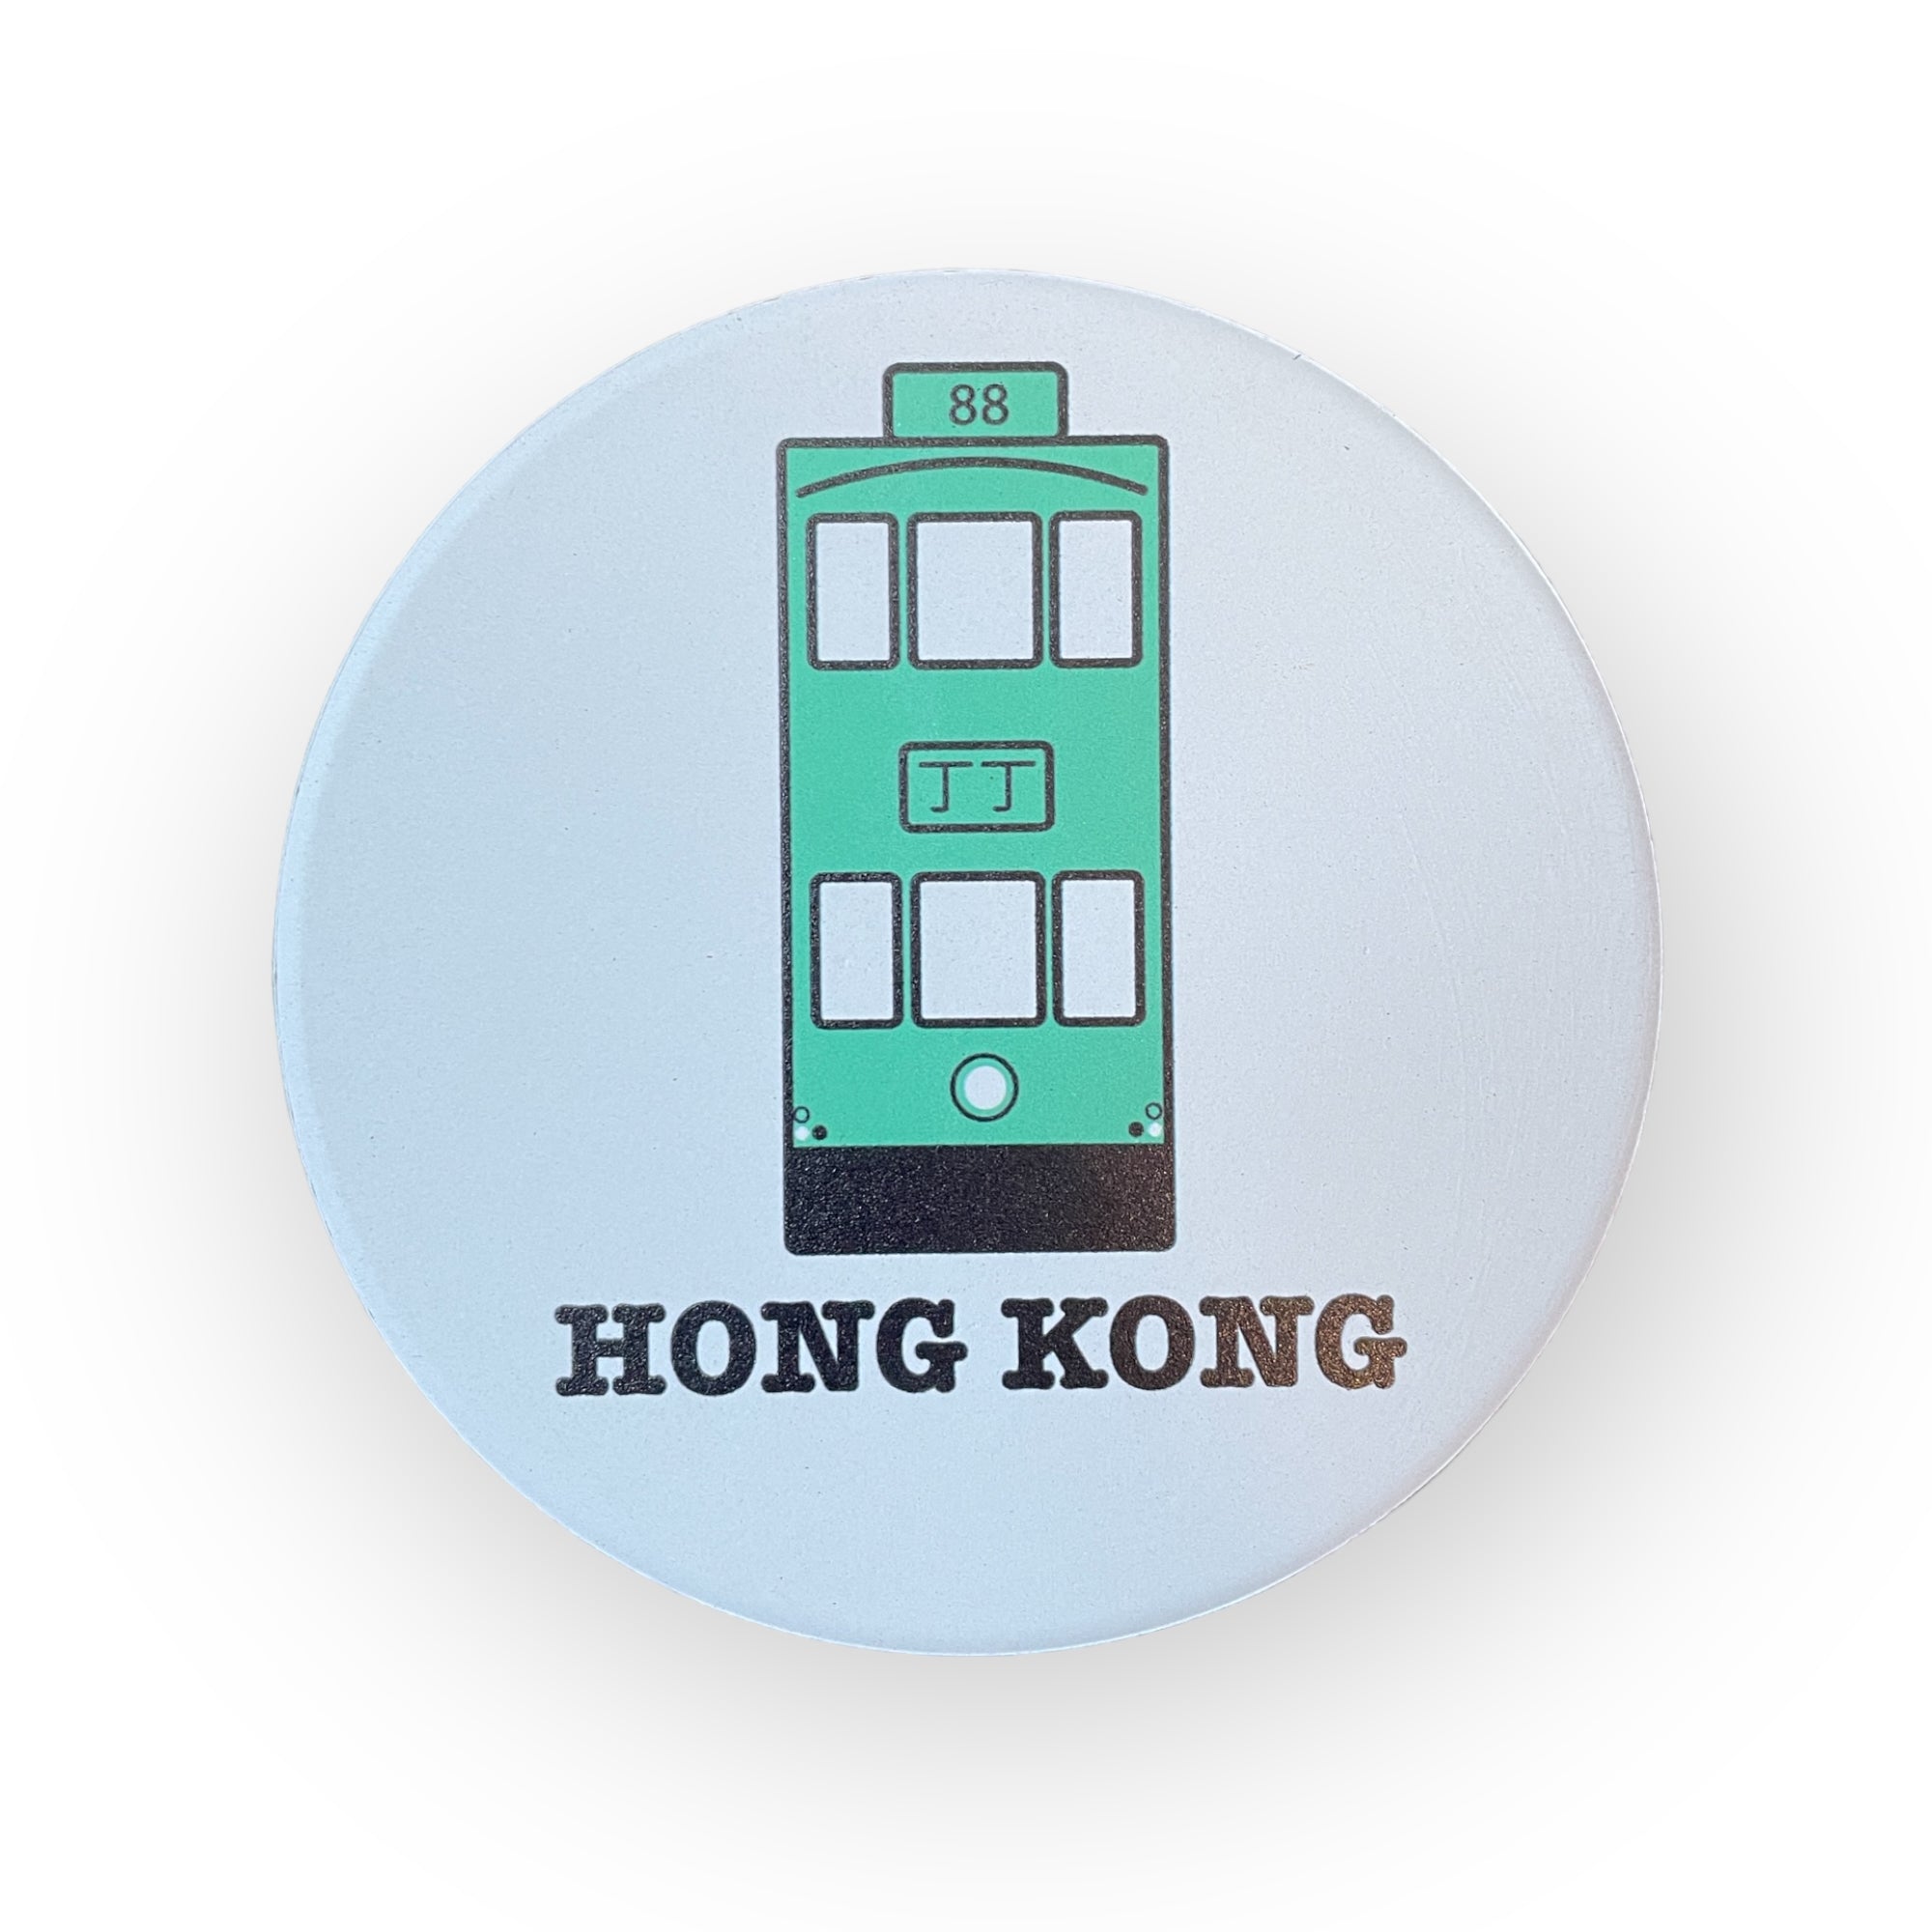 HK Transport Ceramic Coaster Set of 4 with Metal Holder by Liz Fry Design